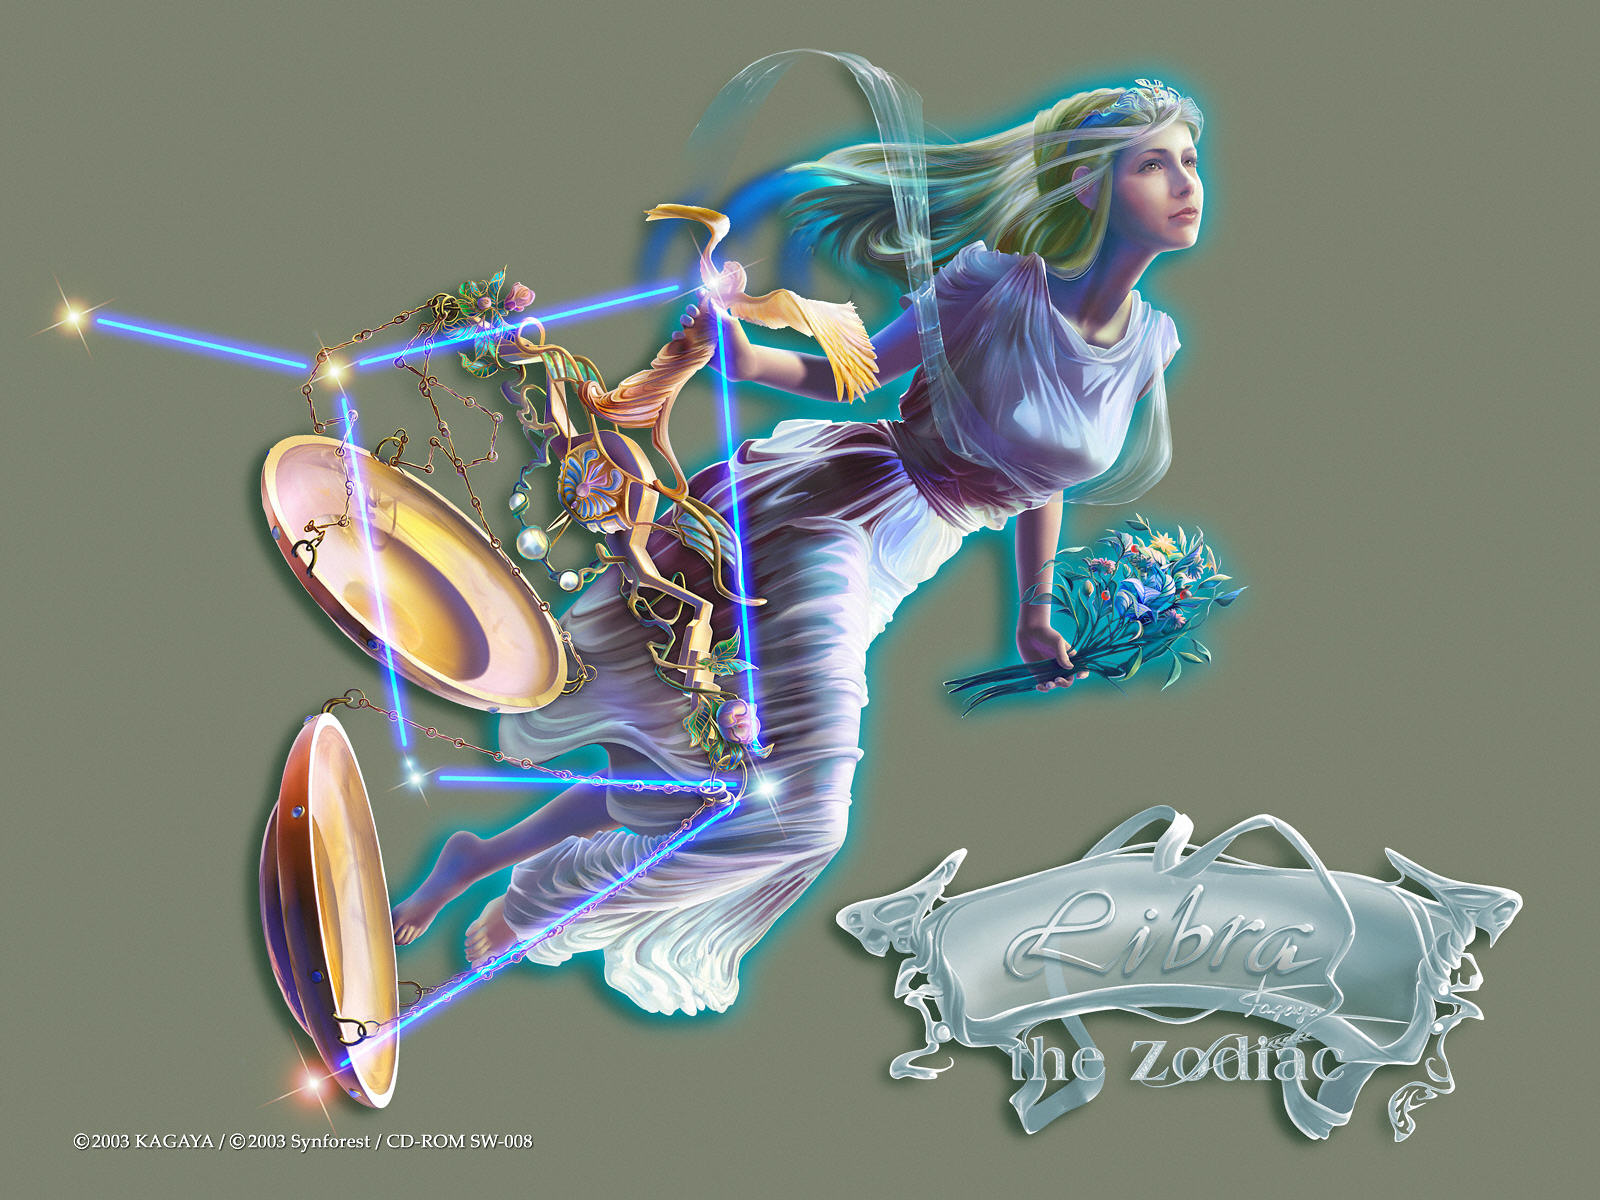 Download HQ Constellation Libra The Zodiac wallpaper / 1600x1200